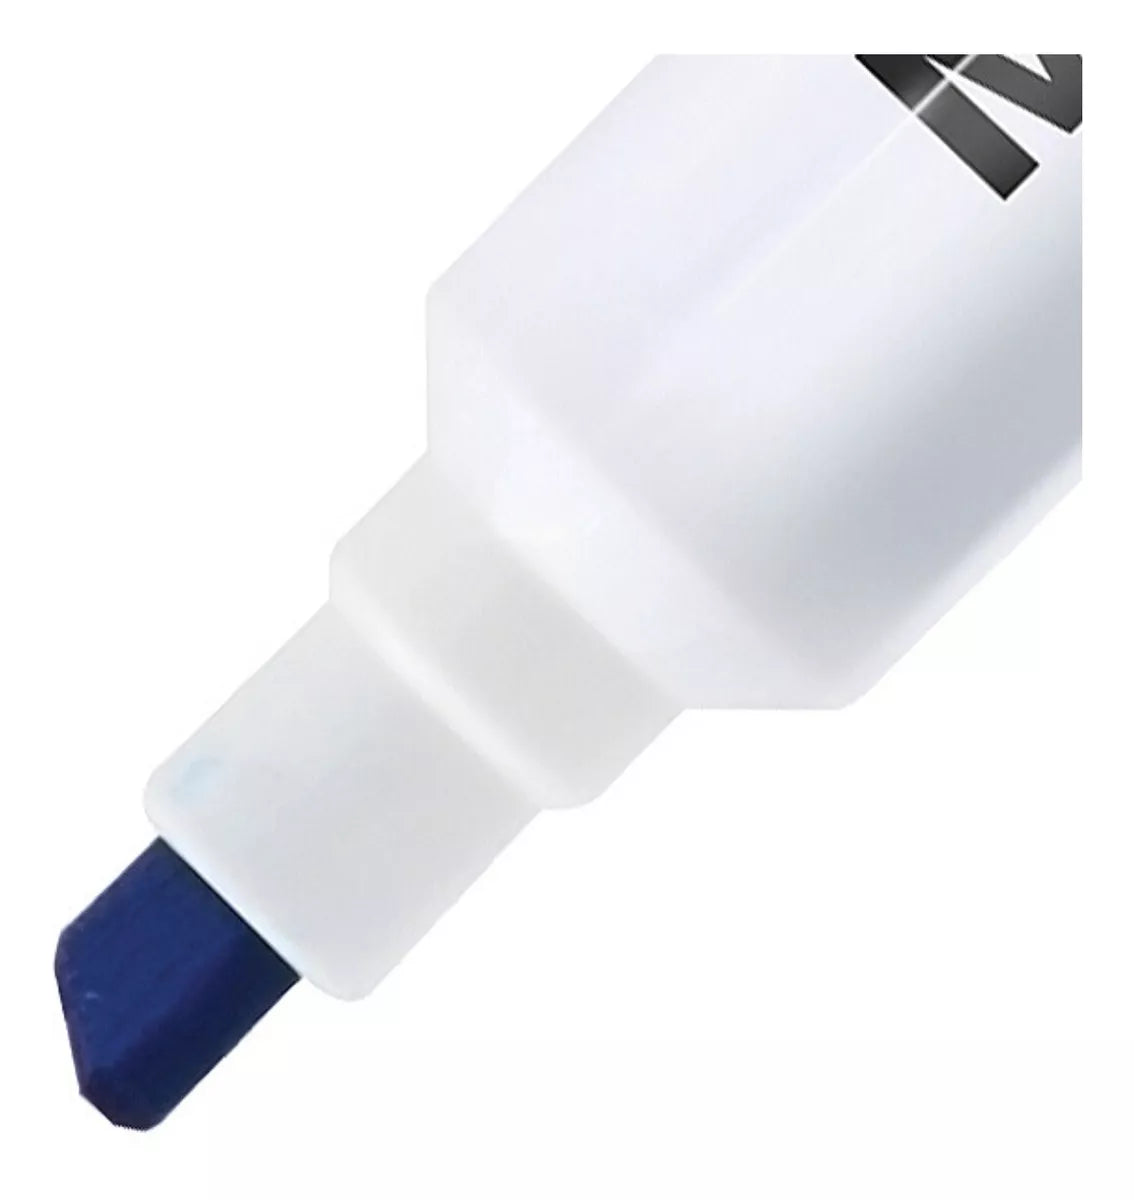 Marcadores Azor para Pizarrón Blanco Magistral Digital 6mm 12 Piezas Elegir Color